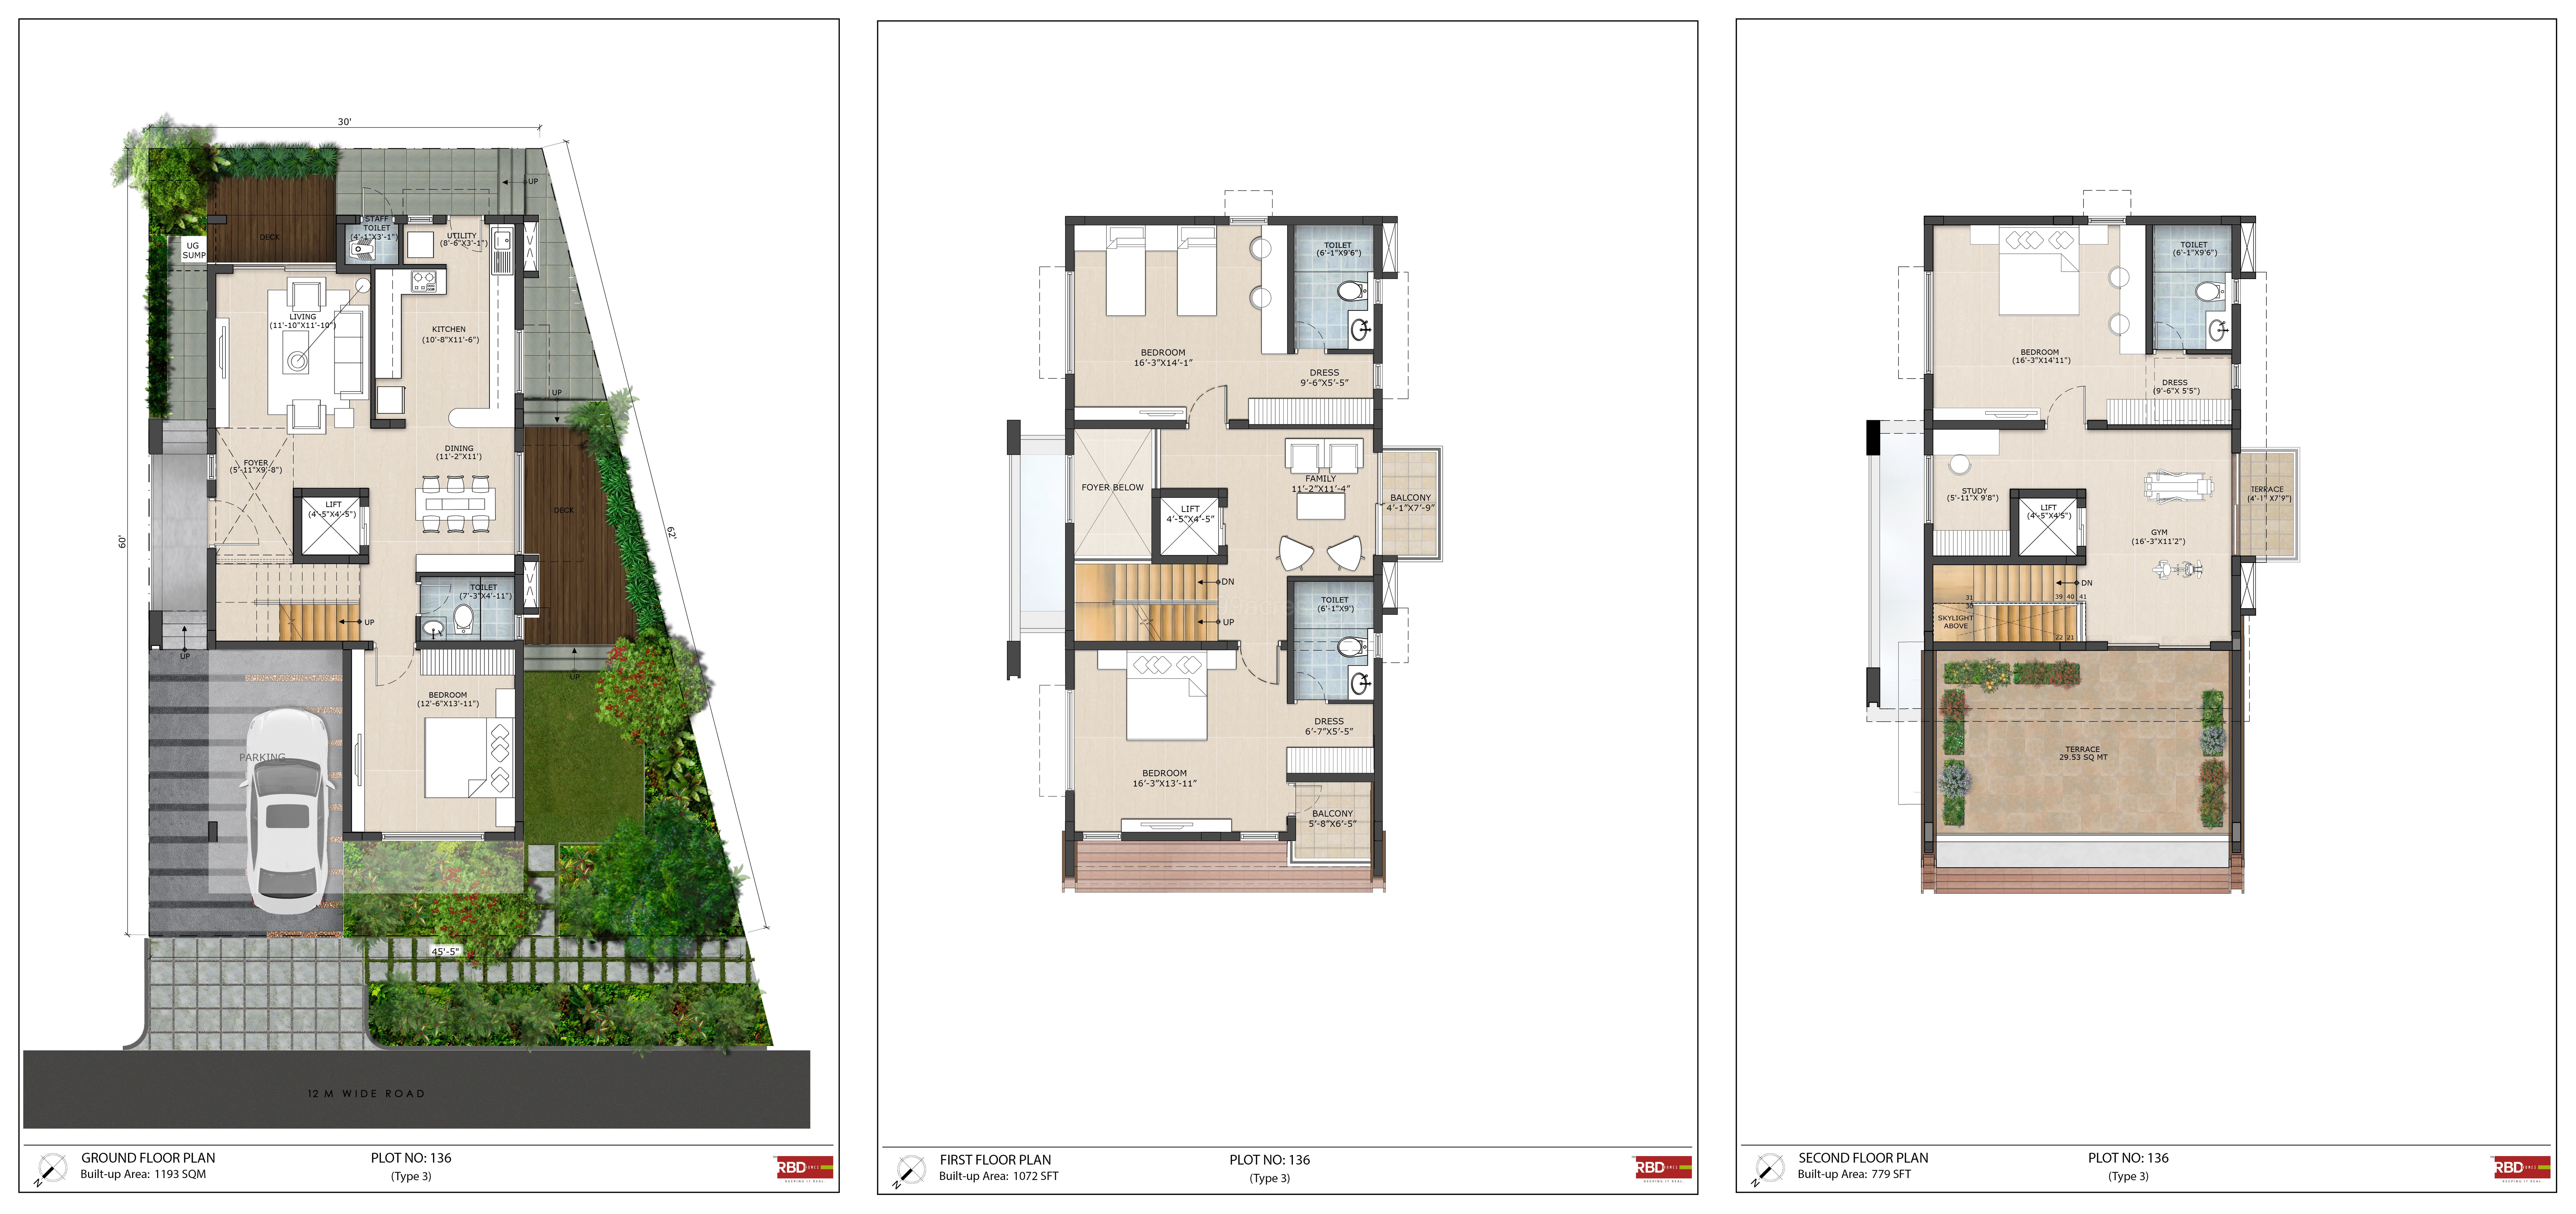 Bản vẽ sàn RBD Stillwaters: Bản vẽ sàn RBD Stillwaters là một trong những điều cần thiết khi xây dựng nhà ở. Hình ảnh về bản vẽ sàn RBD Stillwaters sẽ giúp bạn hiểu rõ hơn về những tính năng cơ bản của căn nhà, từ đó đưa ra những quyết định đúng đắn nhất trong việc thực hiện dự án.